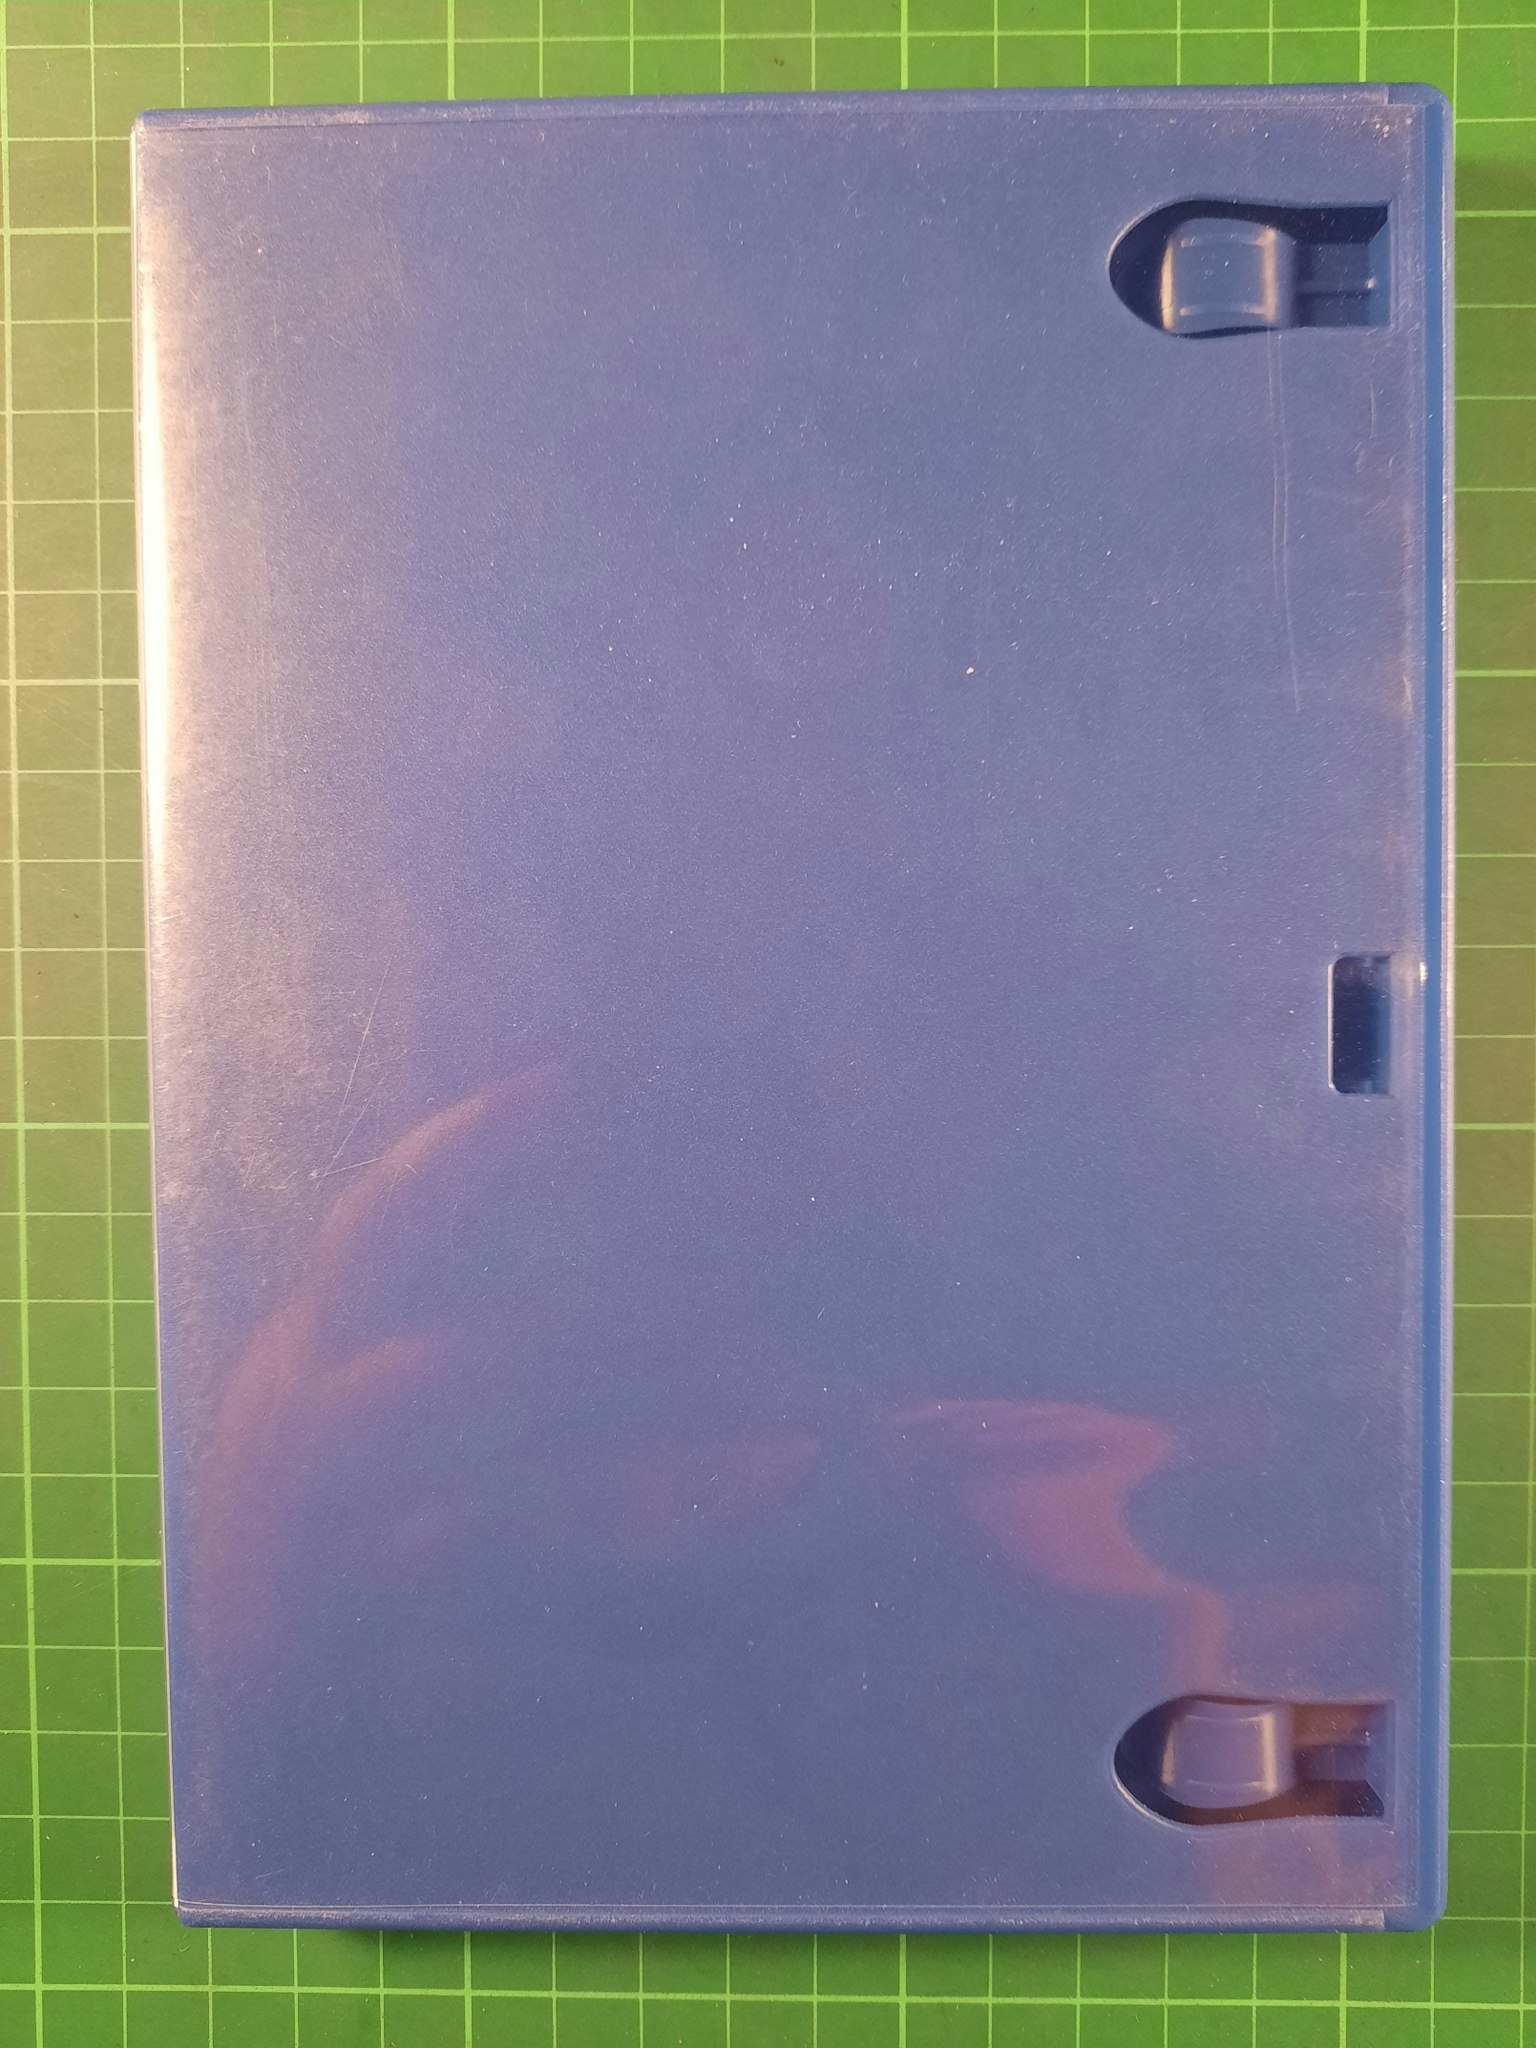 Playstation 2 :Brukt cover, uten memory card holder